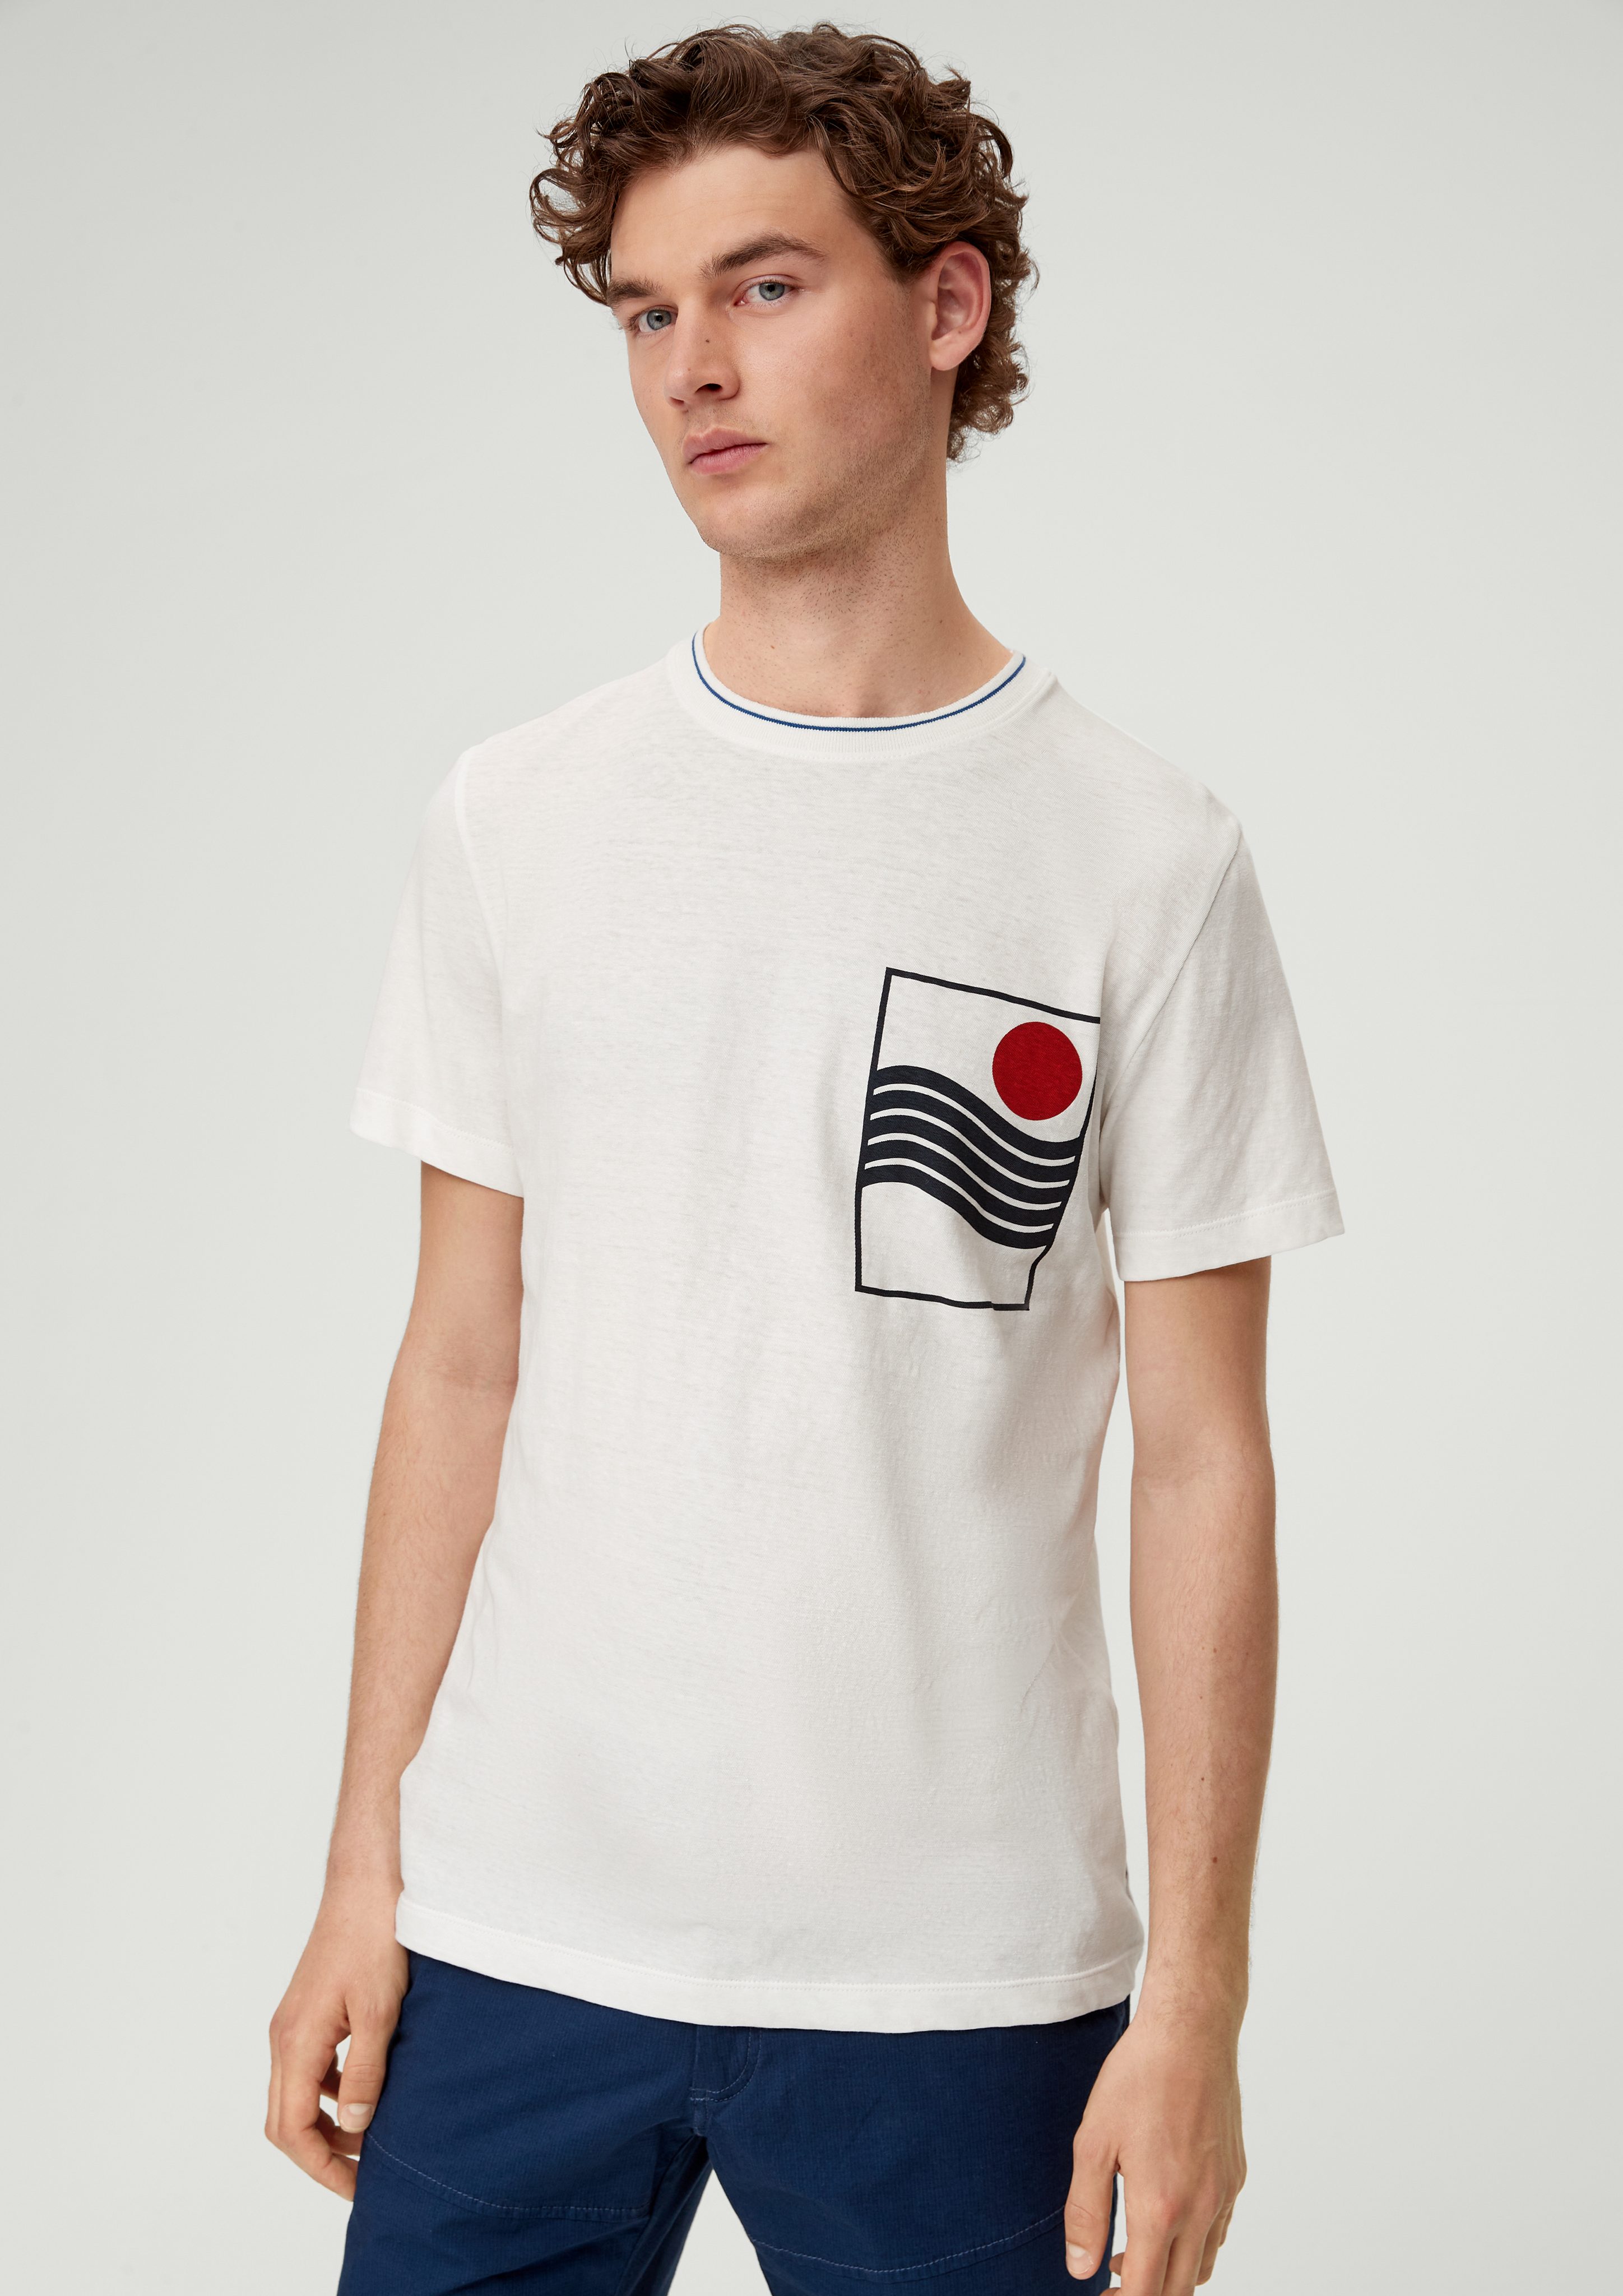 s.Oliver Kurzarmshirt T-Shirt aus Leinenmix Artwork weiß